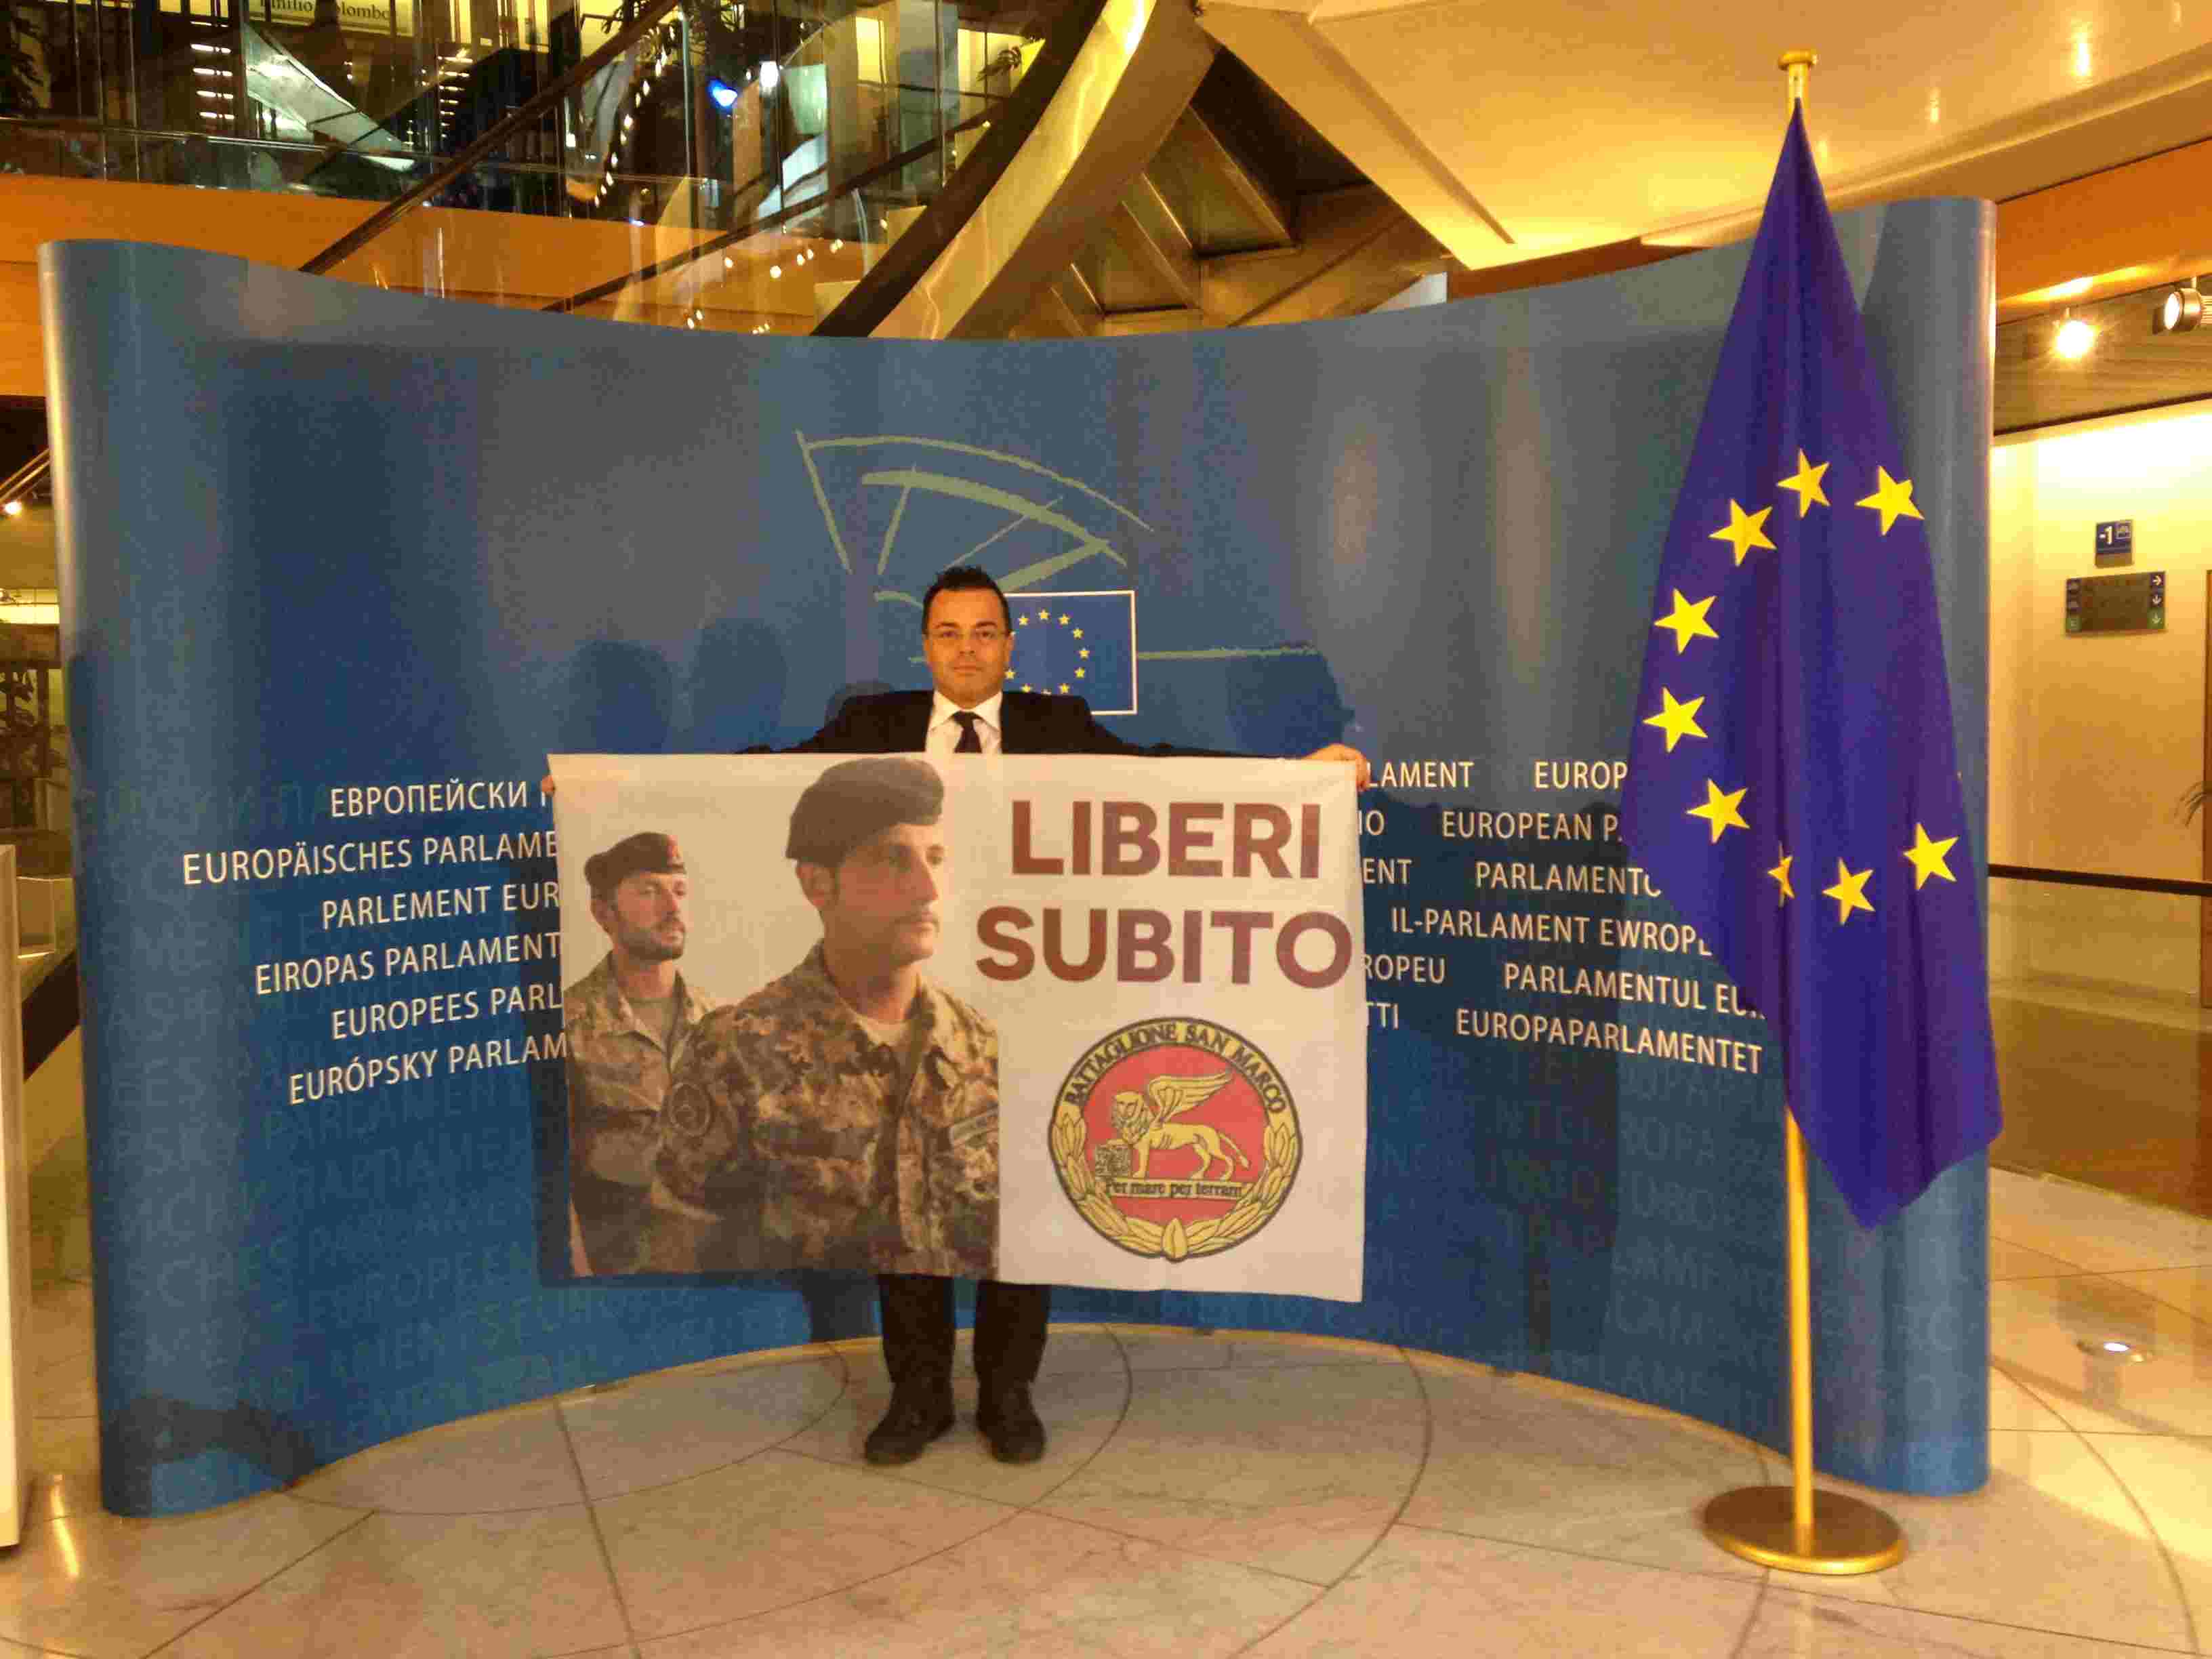 Buonanno (Lega) interrompe Juncker Parlamento Europeo, esibendo bandiera a sostegno dei Marò: liberi subito